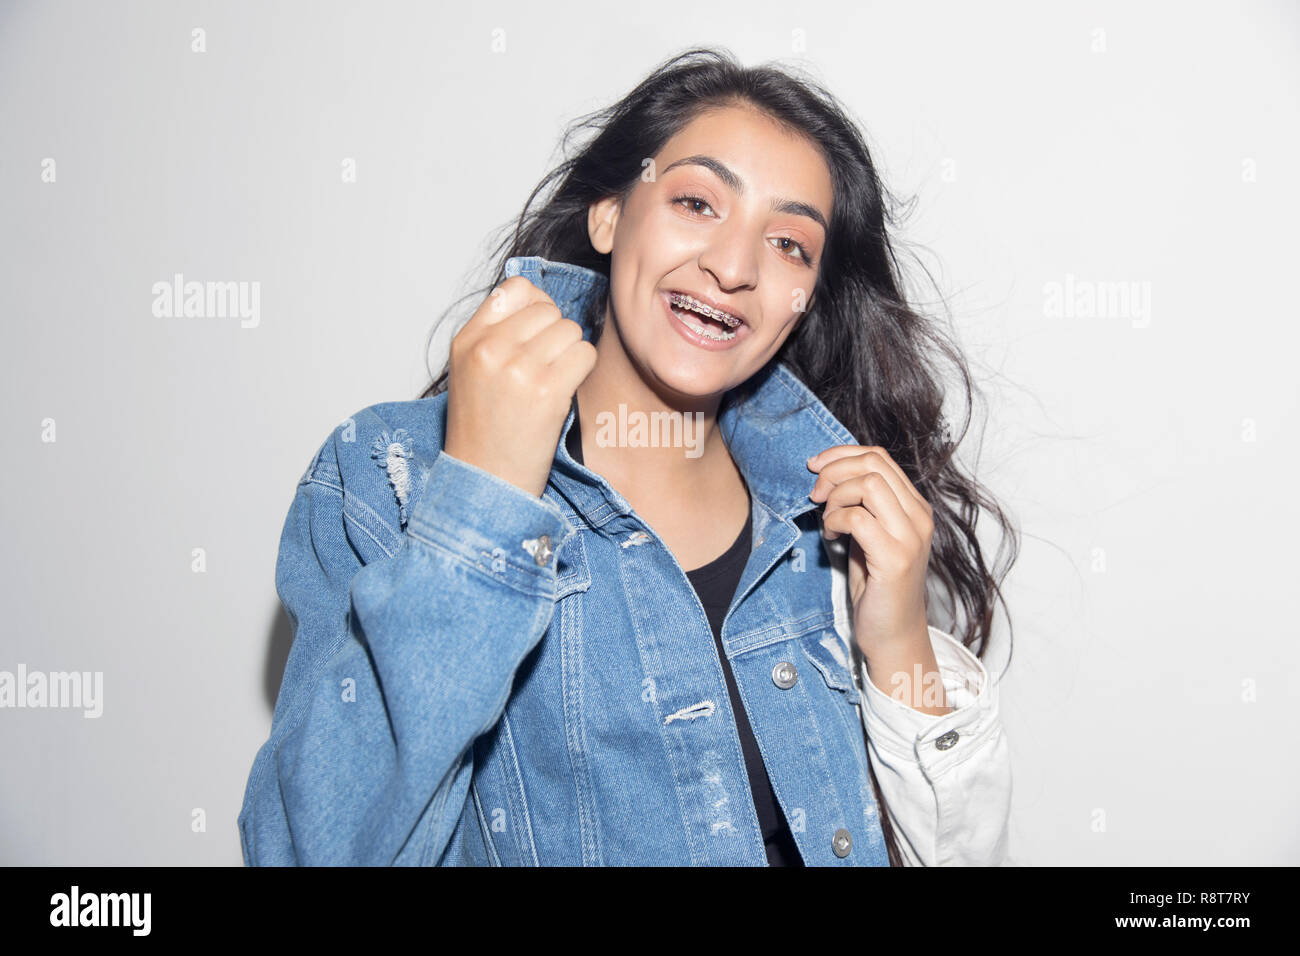 Ritratto felice, fiducioso ragazza adolescente con bretelle indossando giacca denim Foto Stock